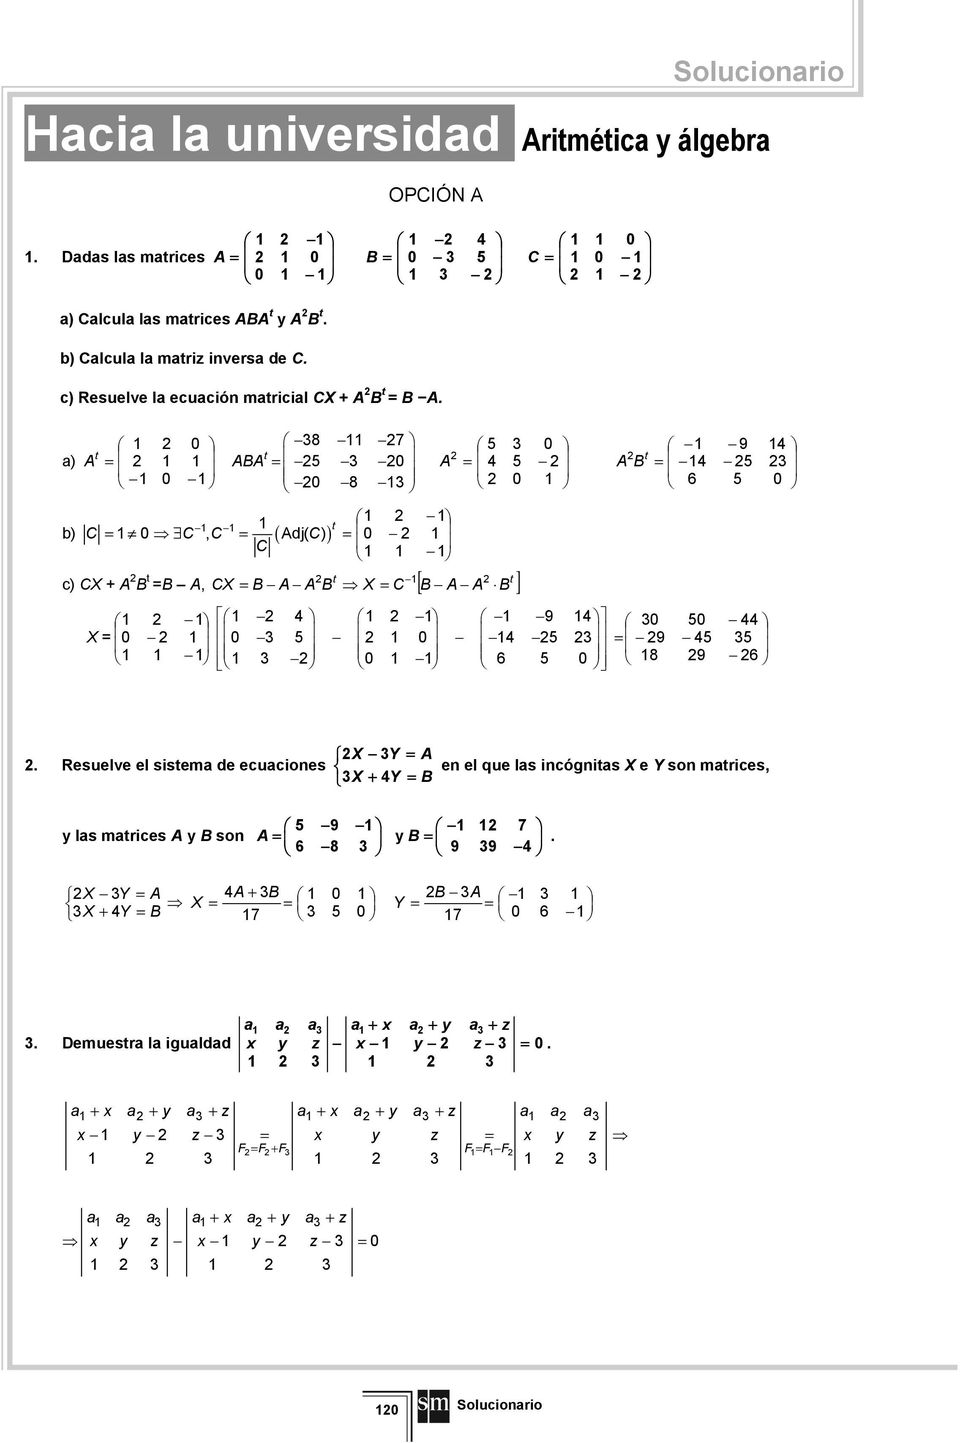 c) Resuelve l ecución mricil. ) 8 7 8 9 ) ( ), dj( ) c), [ ] 9 9 8 9.